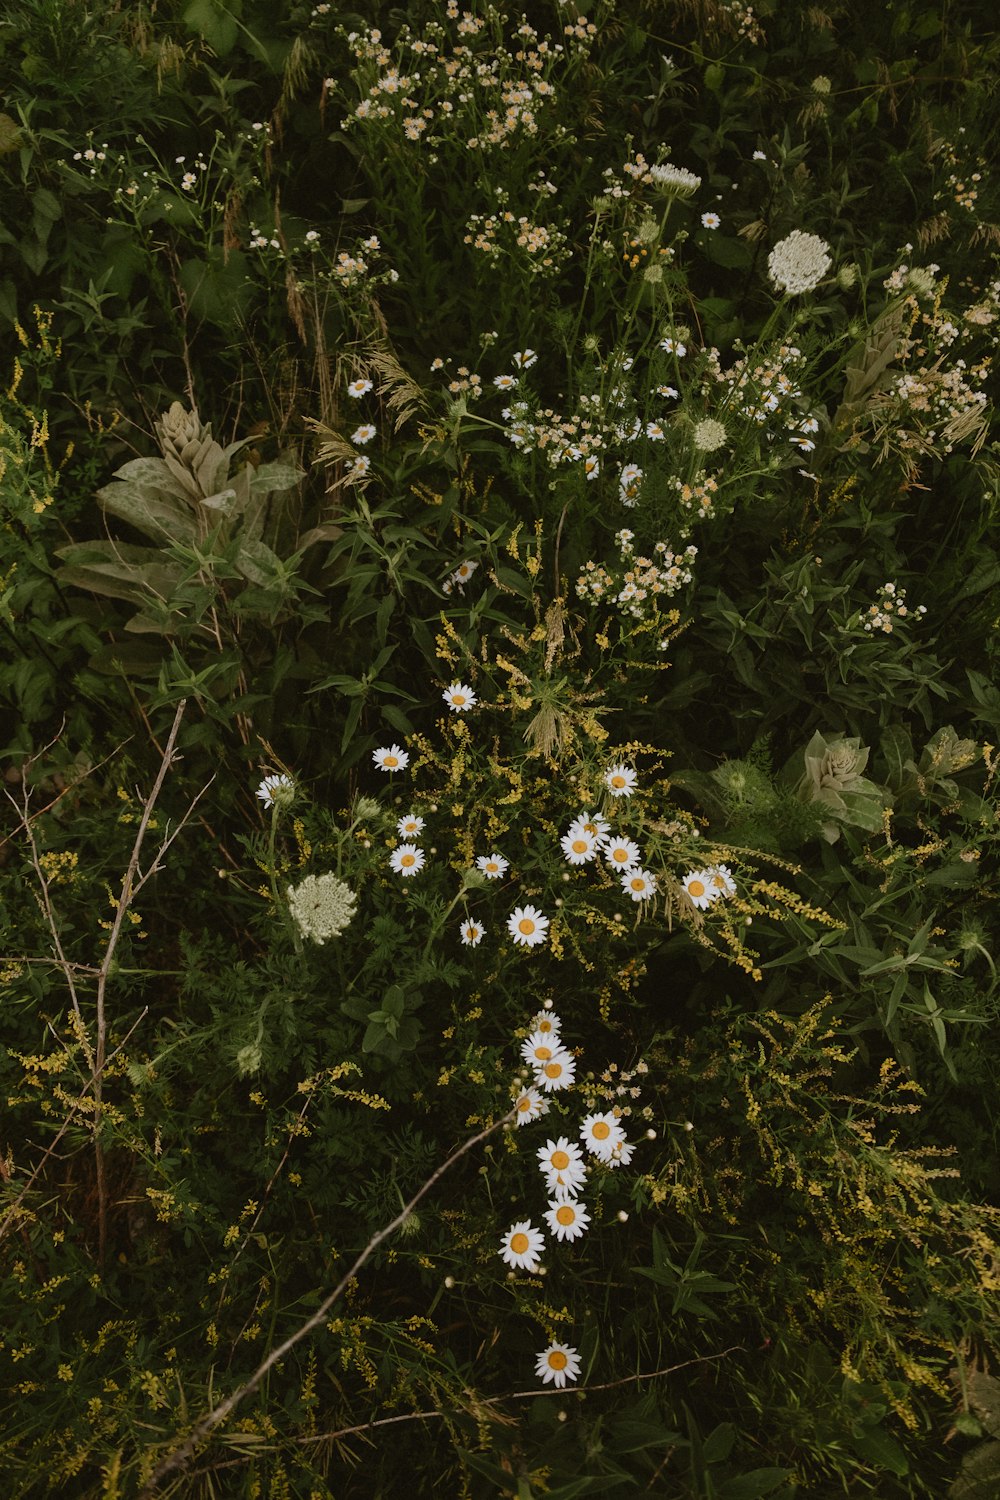 a bunch of wild flowers in a field